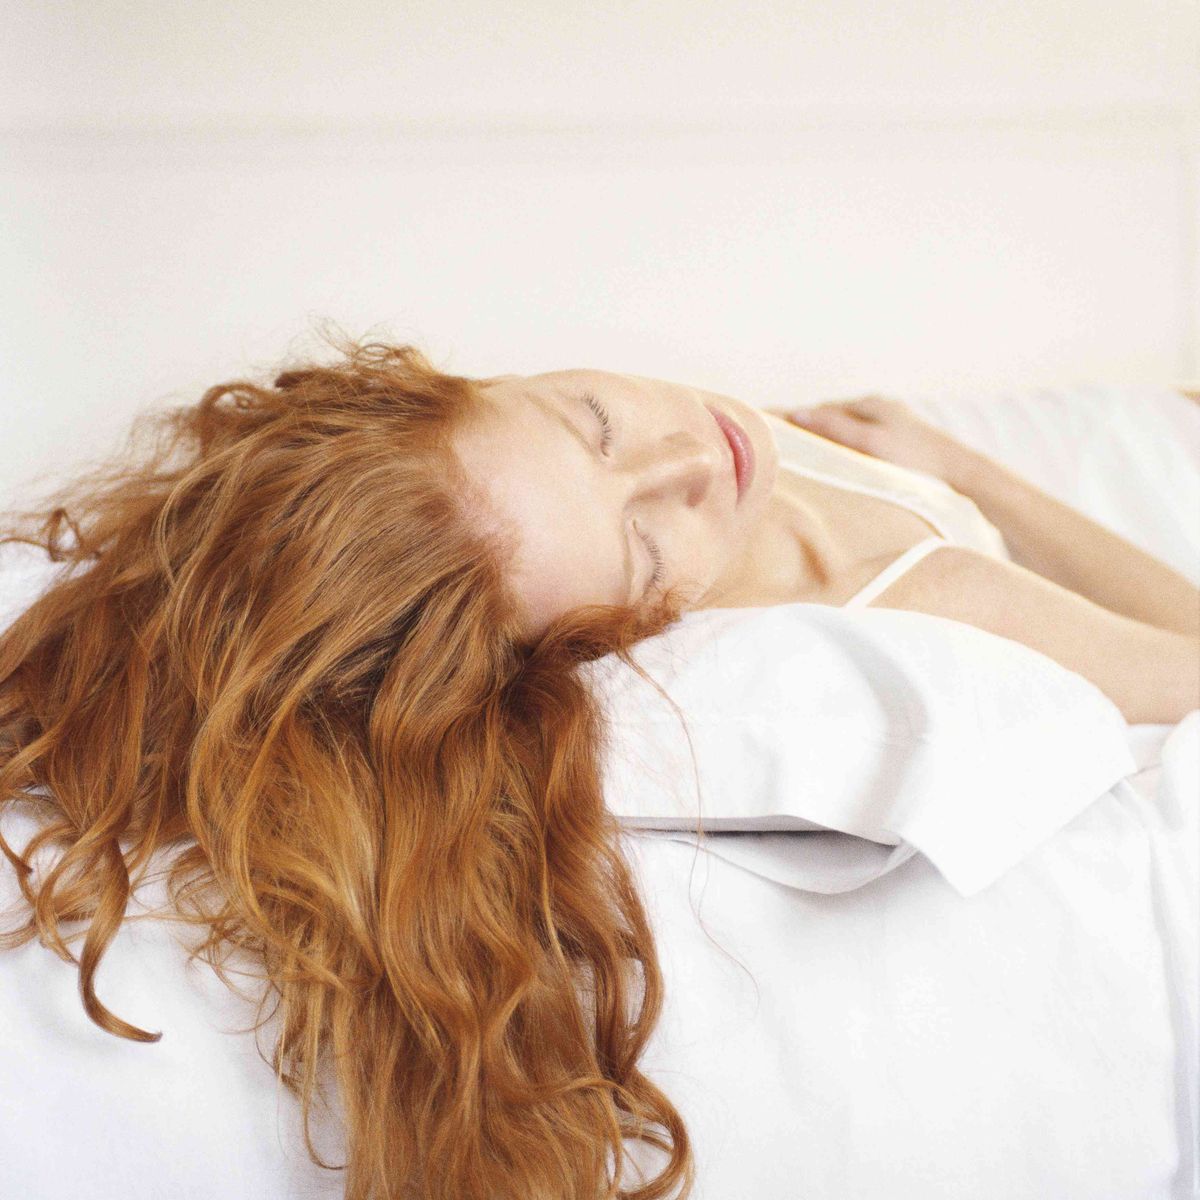 rødhåret kvinde liggende på en seng